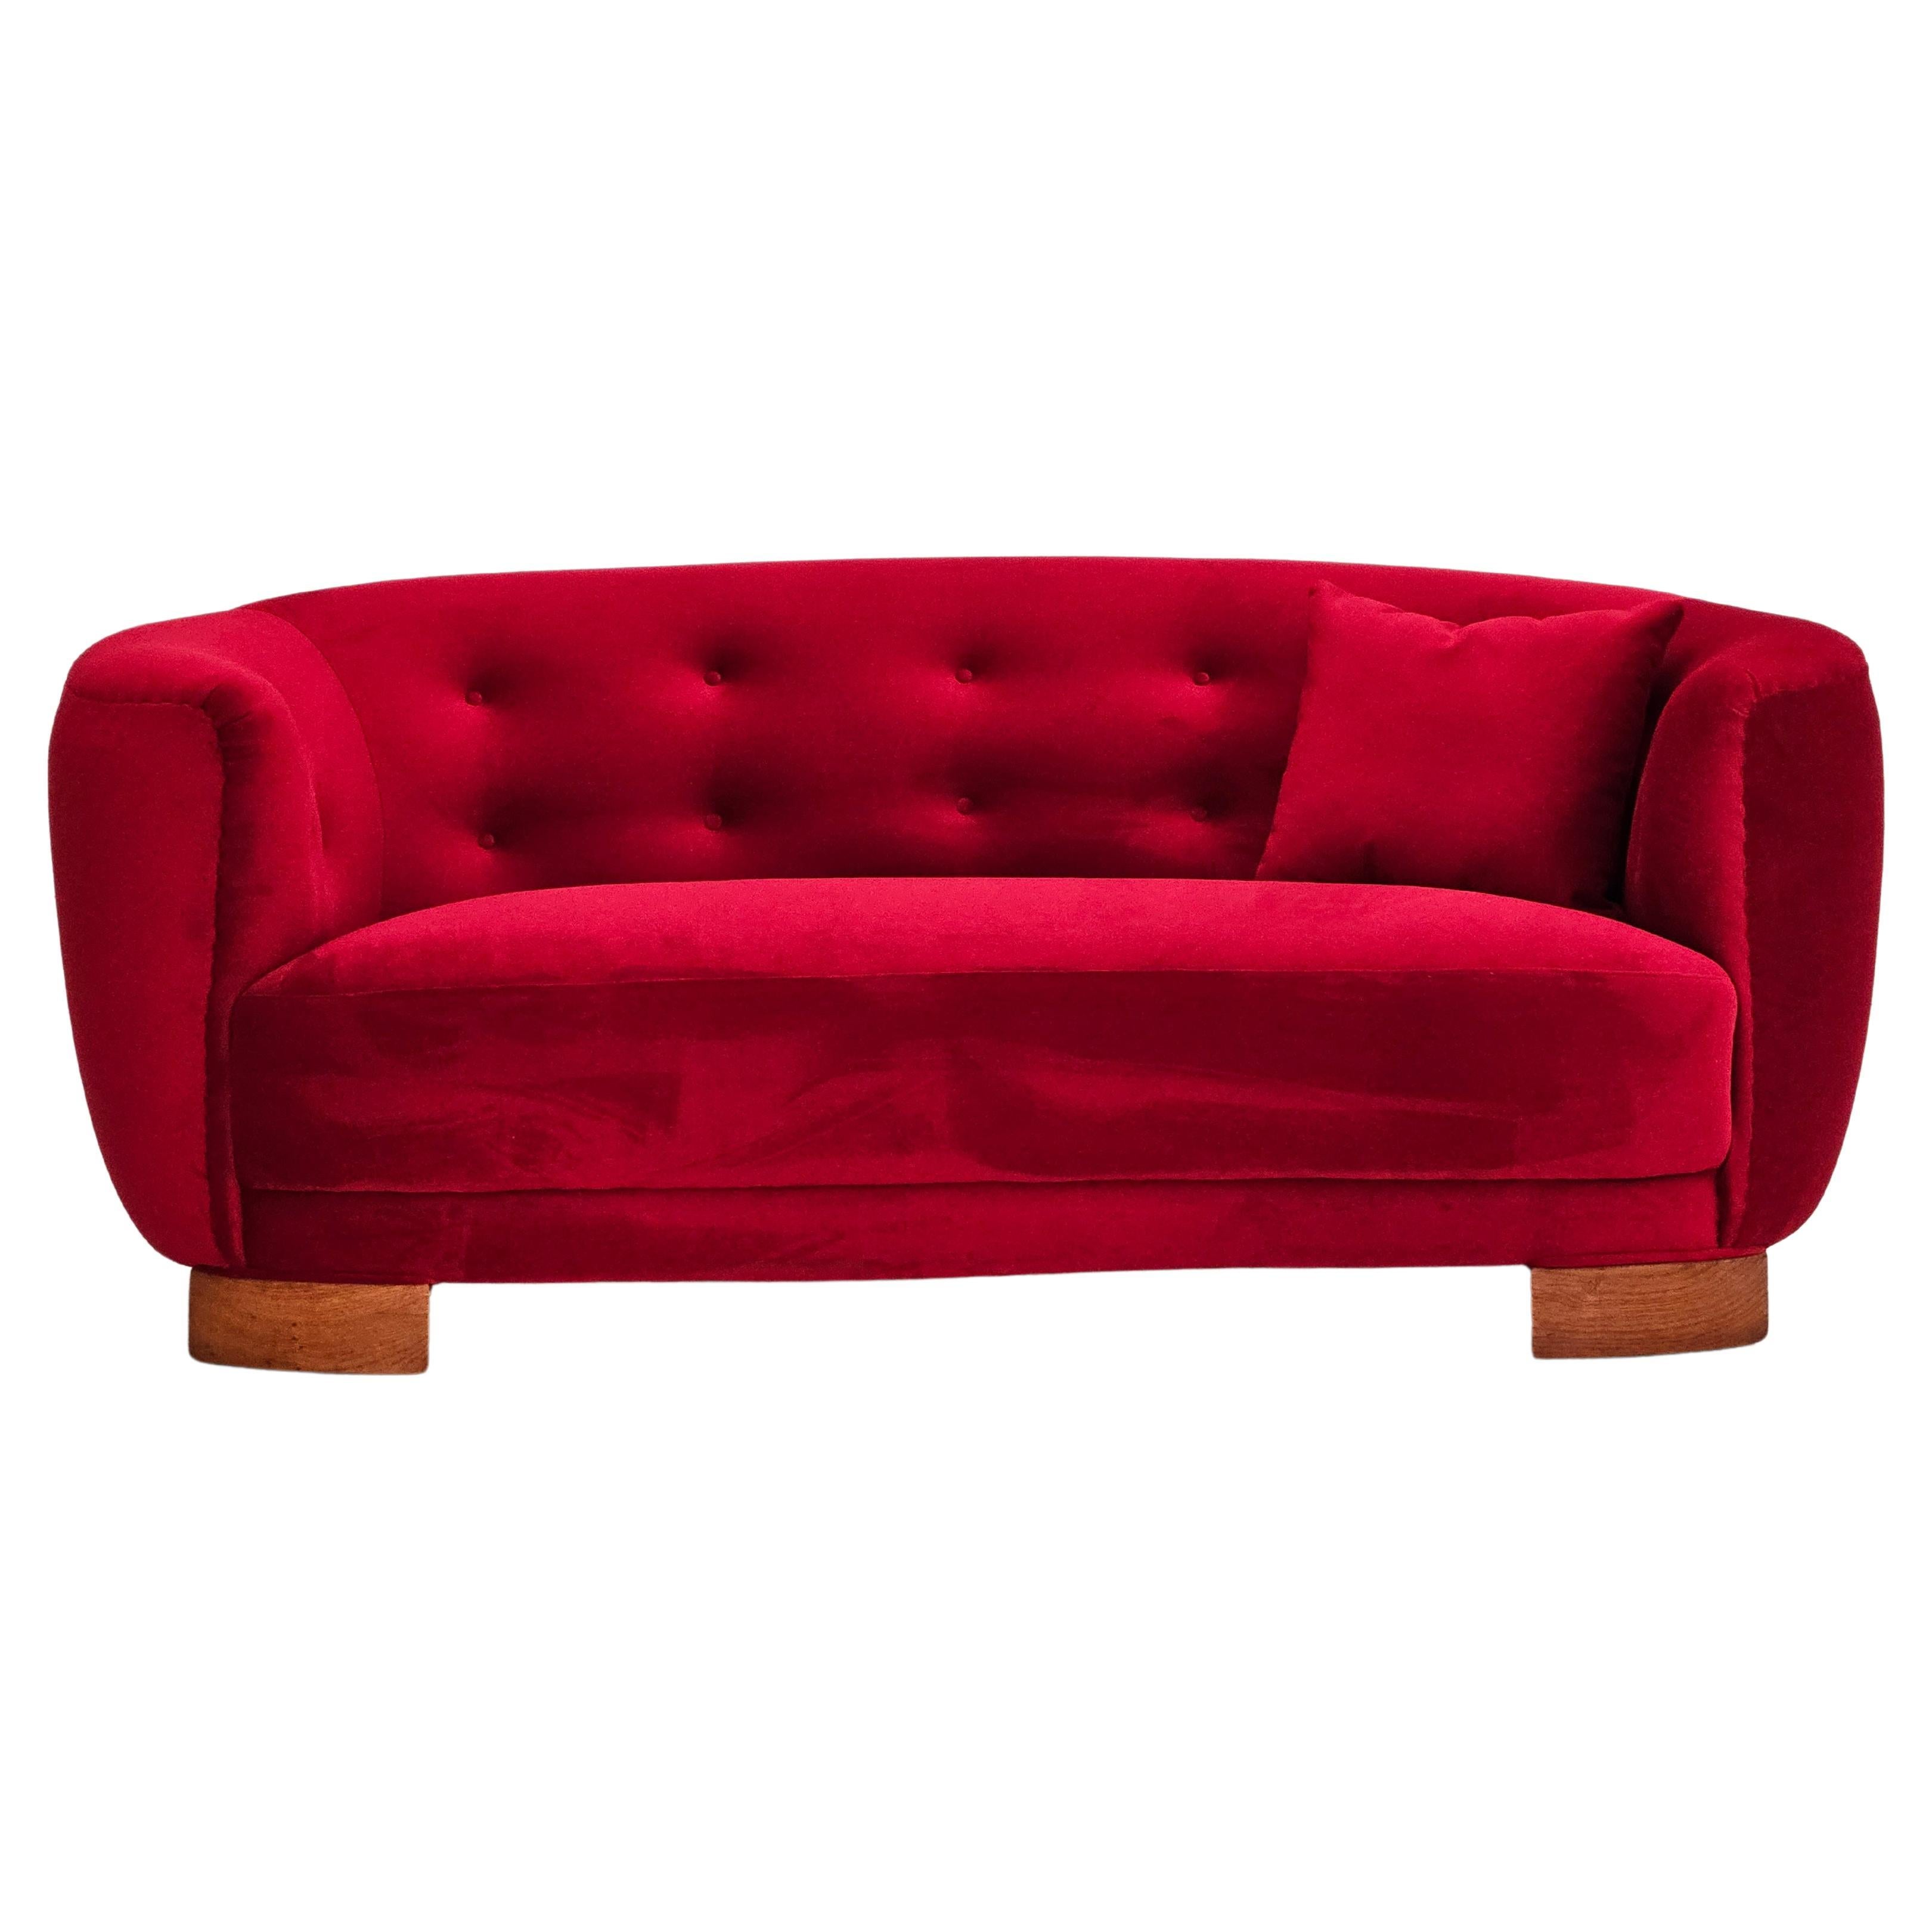 1960er Jahre, dänisches Design, neu gepolstertes 2-Sitzer-Sofa "Banana", Vintage-Velours.